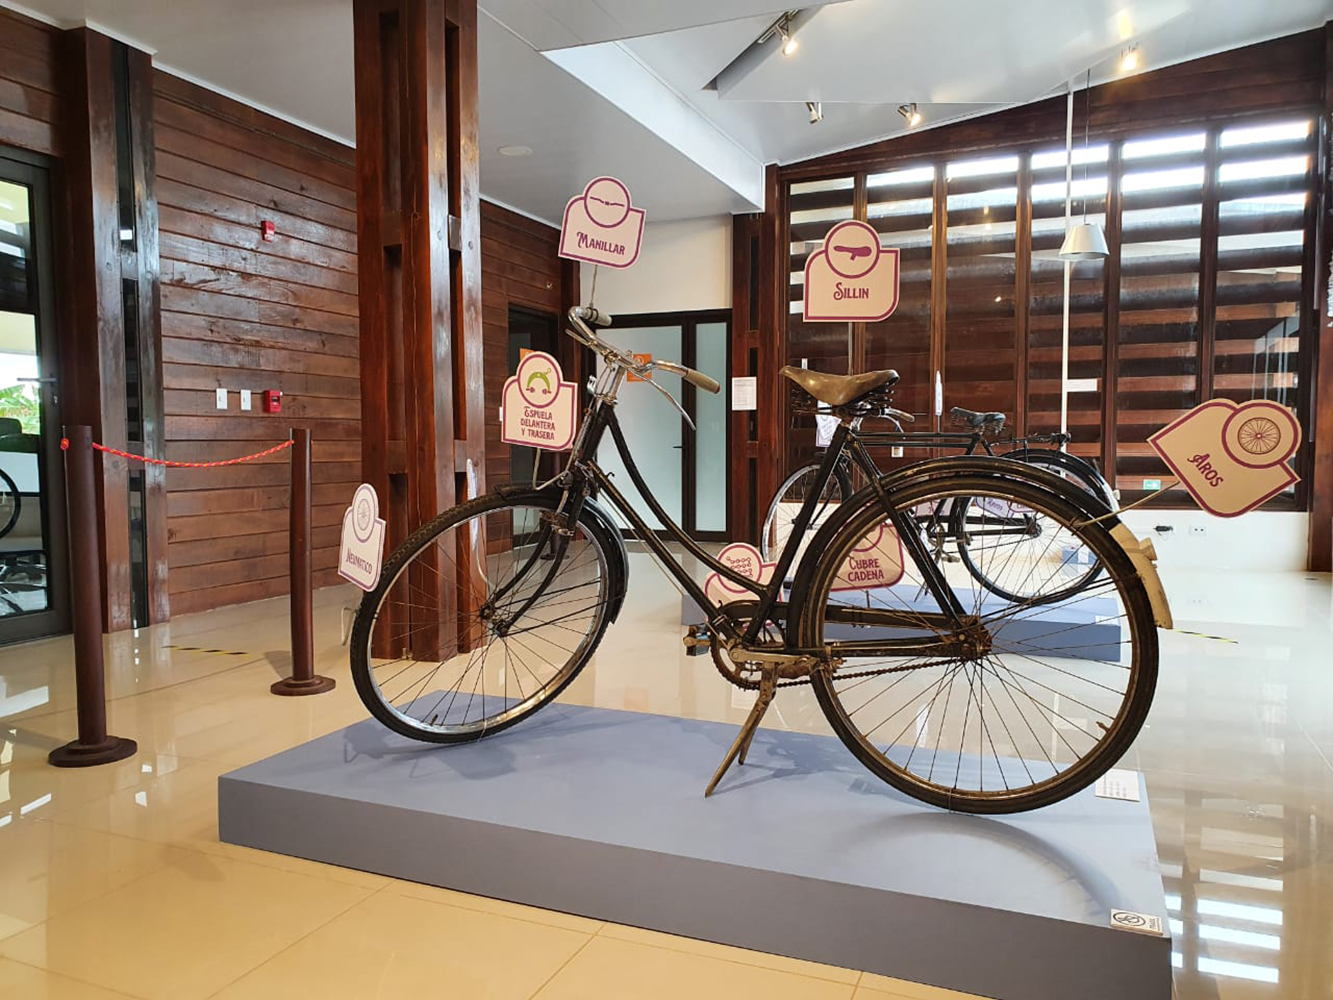 En Osa la historia viaja en bicicleta